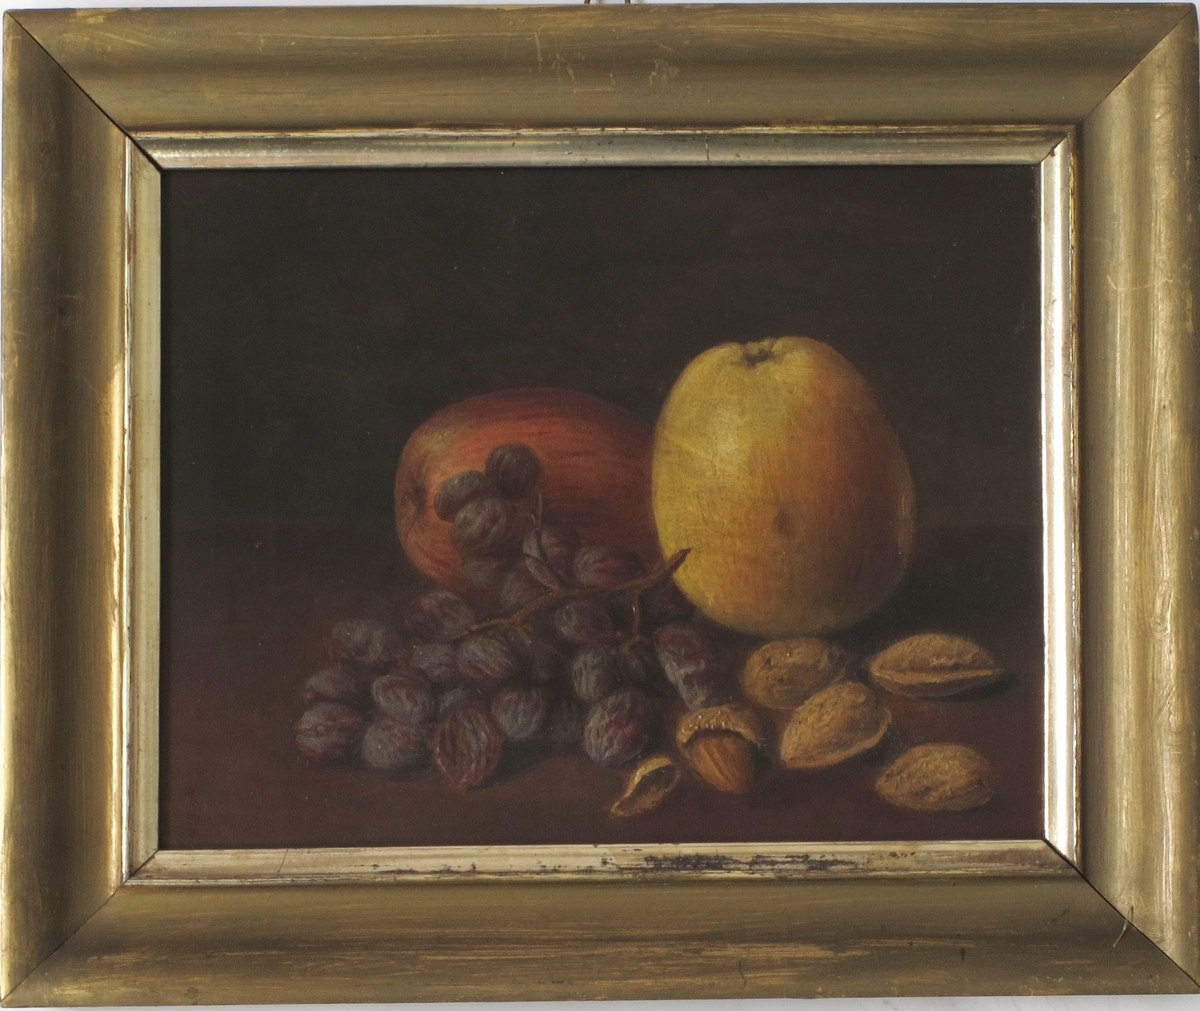 Stilleben, frukt og nøtter. På en brunmalt bordplate ligger 2 epler,en klase rosiner, 5 krakkmandler. Bakgrunn er mørk gråbrun, litt lysere i høyre side.